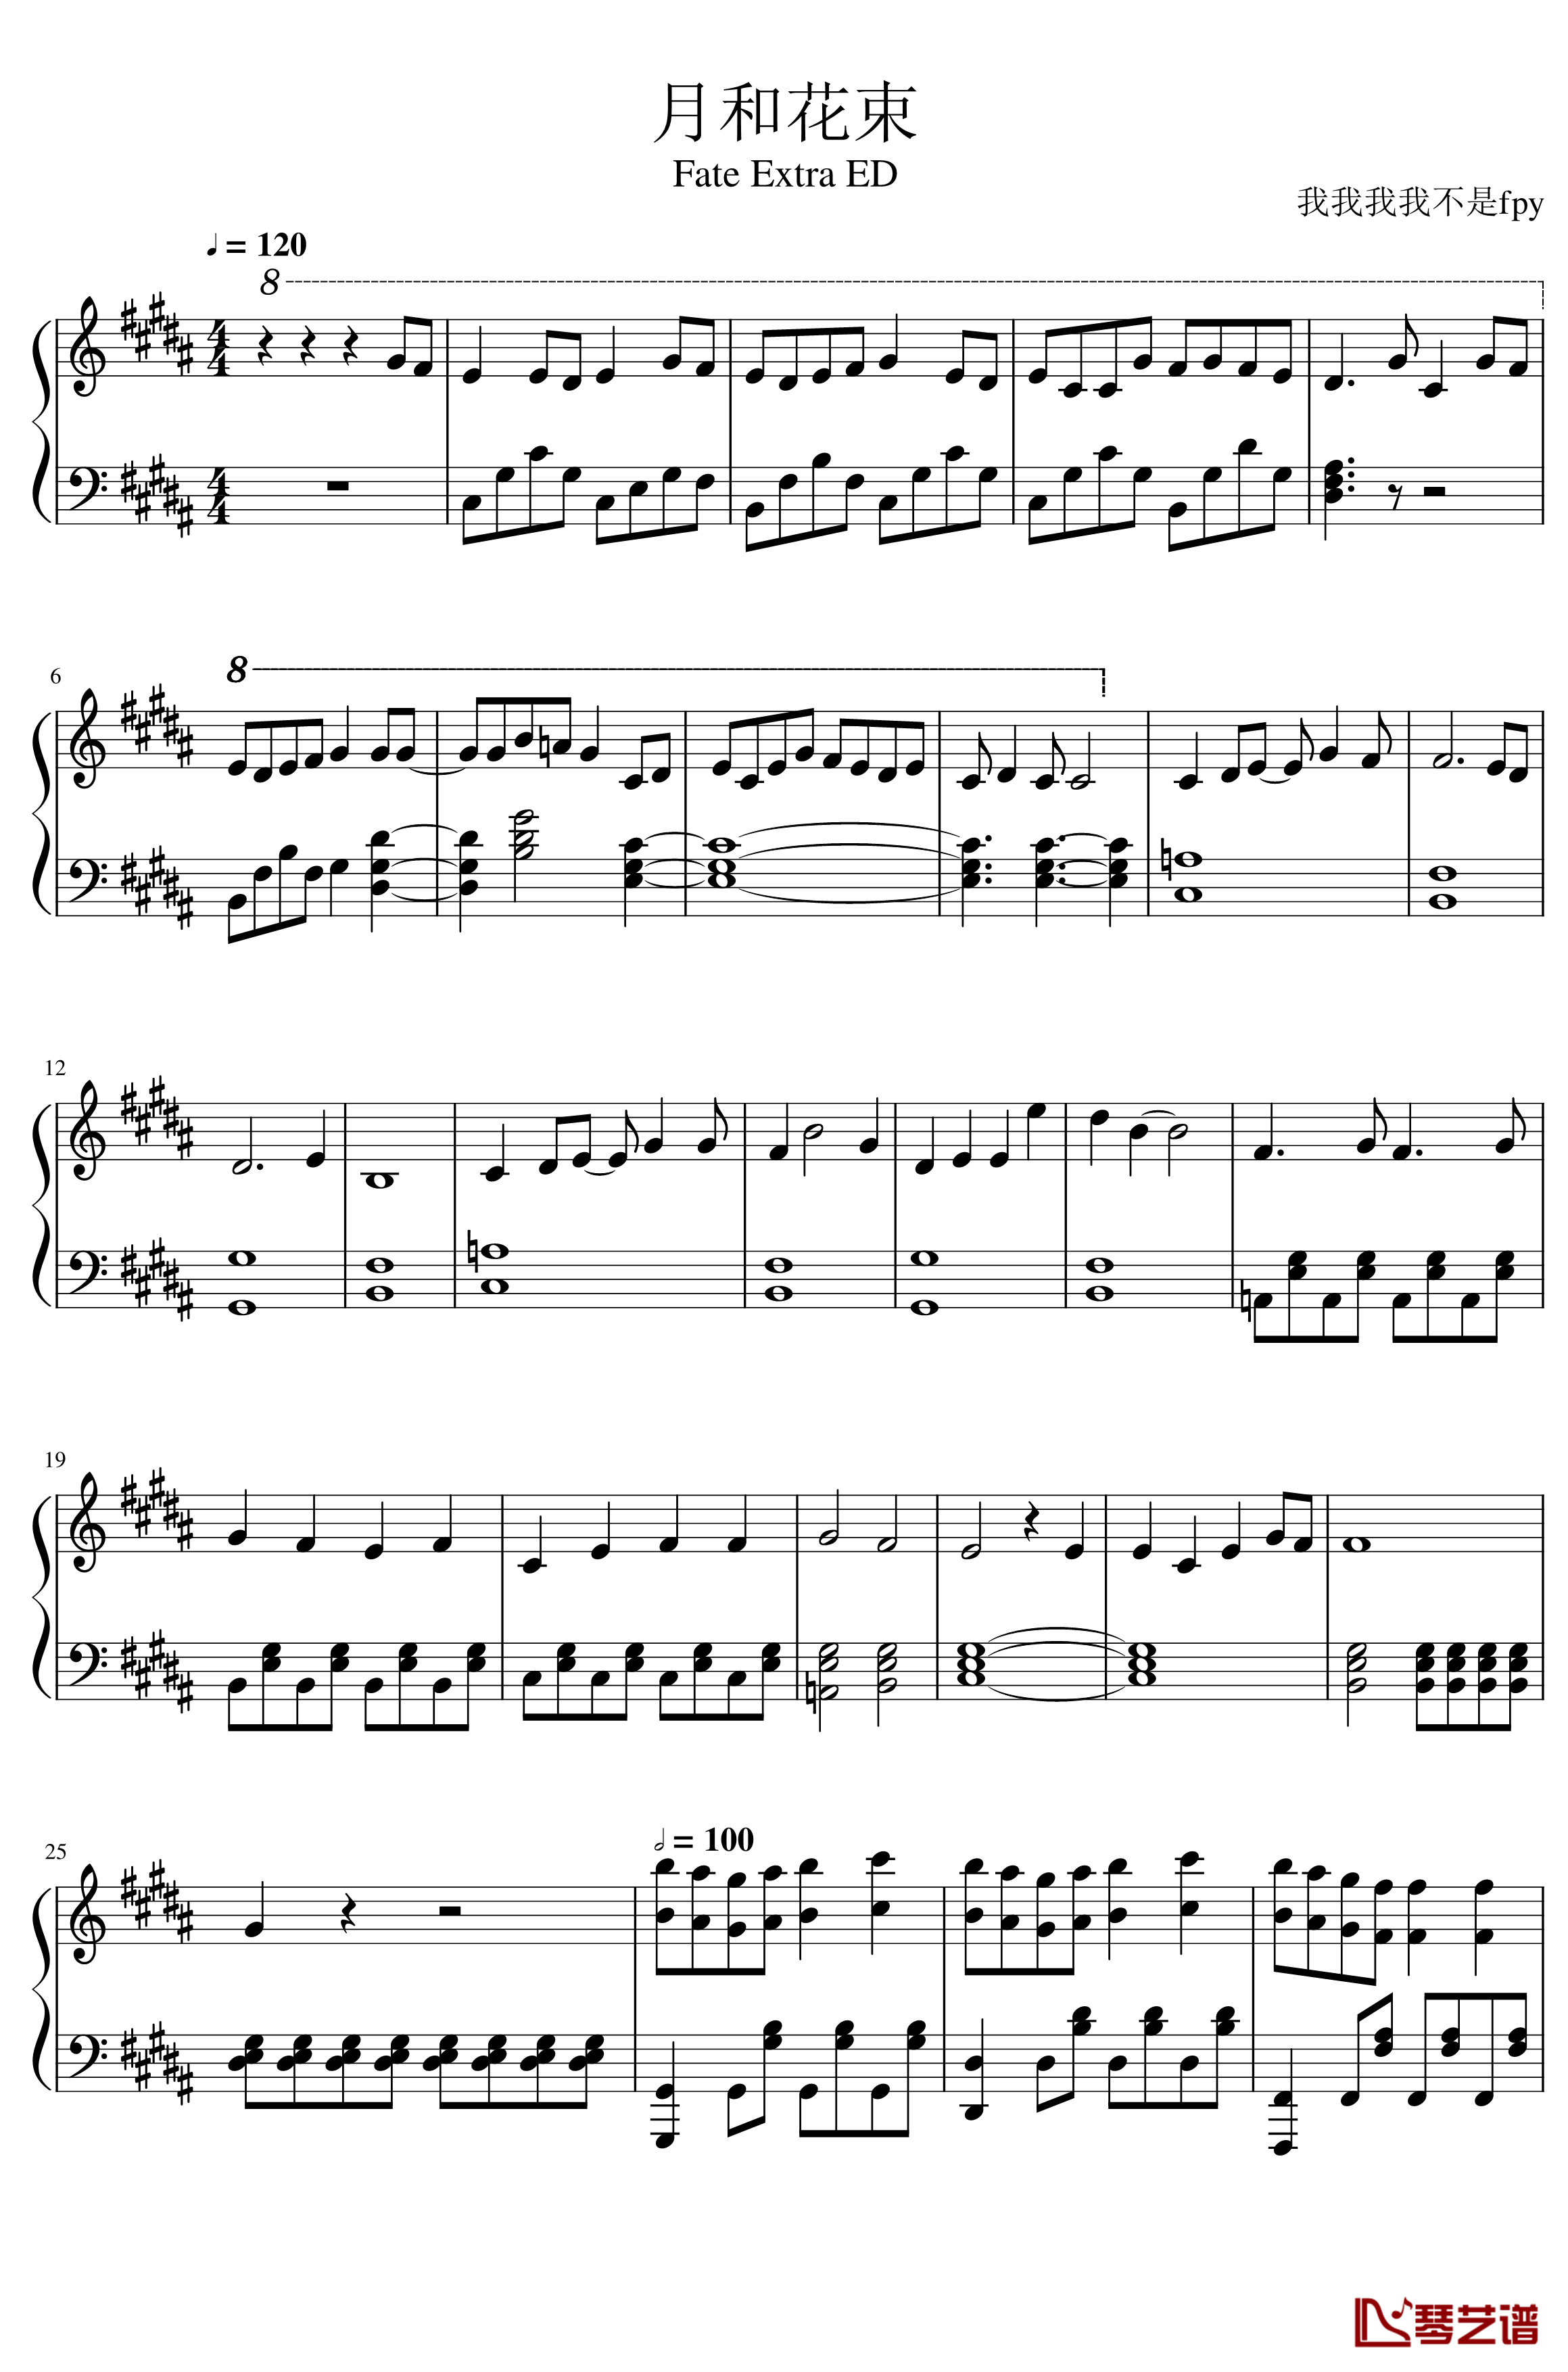 月和花束钢琴谱-fate extra1